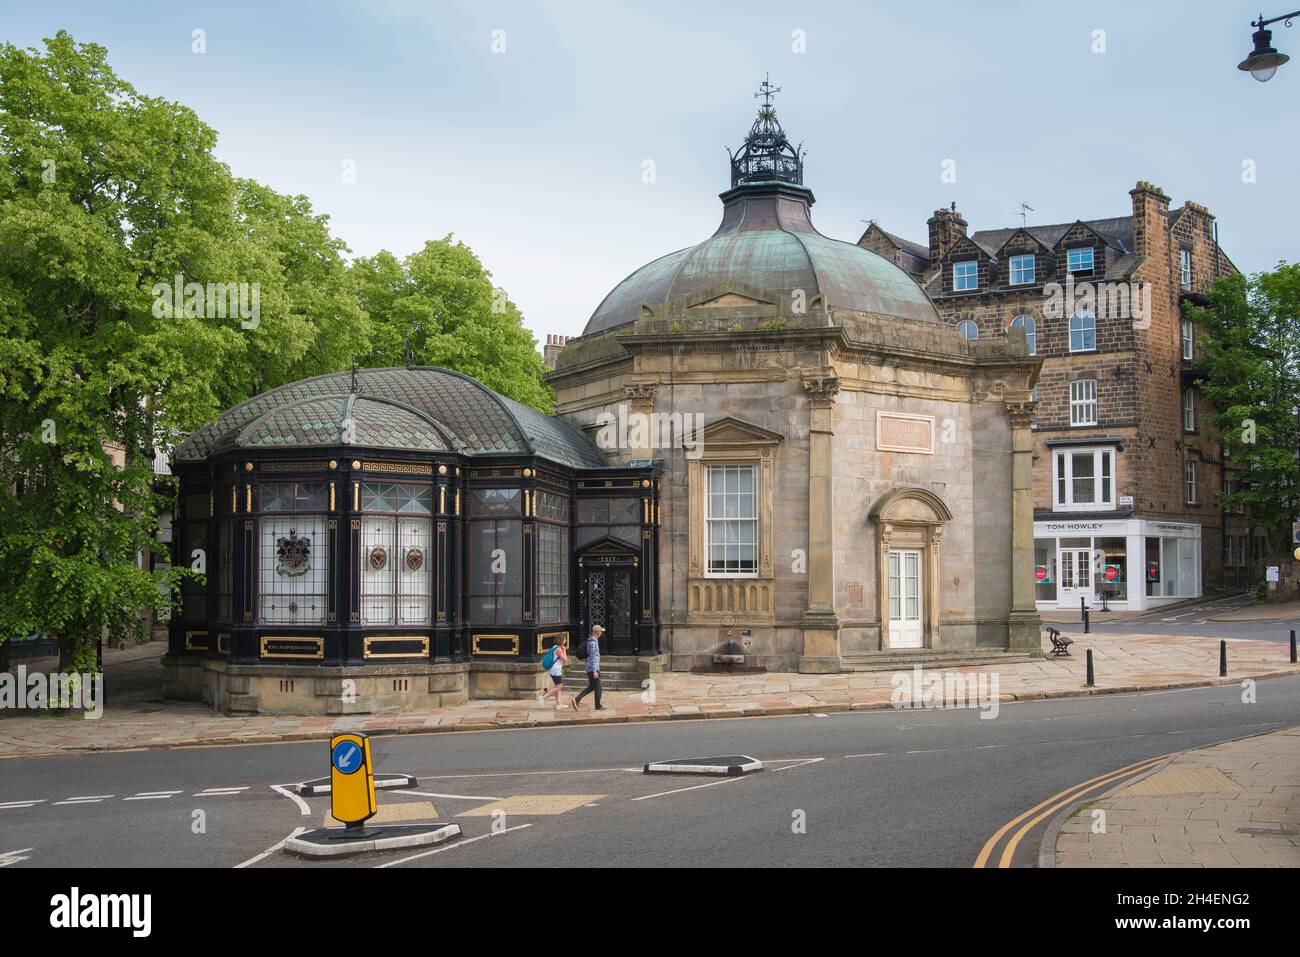 Harrogate Pump Room, Blick auf den achteckigen Royal Pump Room (1842) und das Eisen- und Glasmuseum (1913), Harrogate, North Yorkshire, England Stockfoto